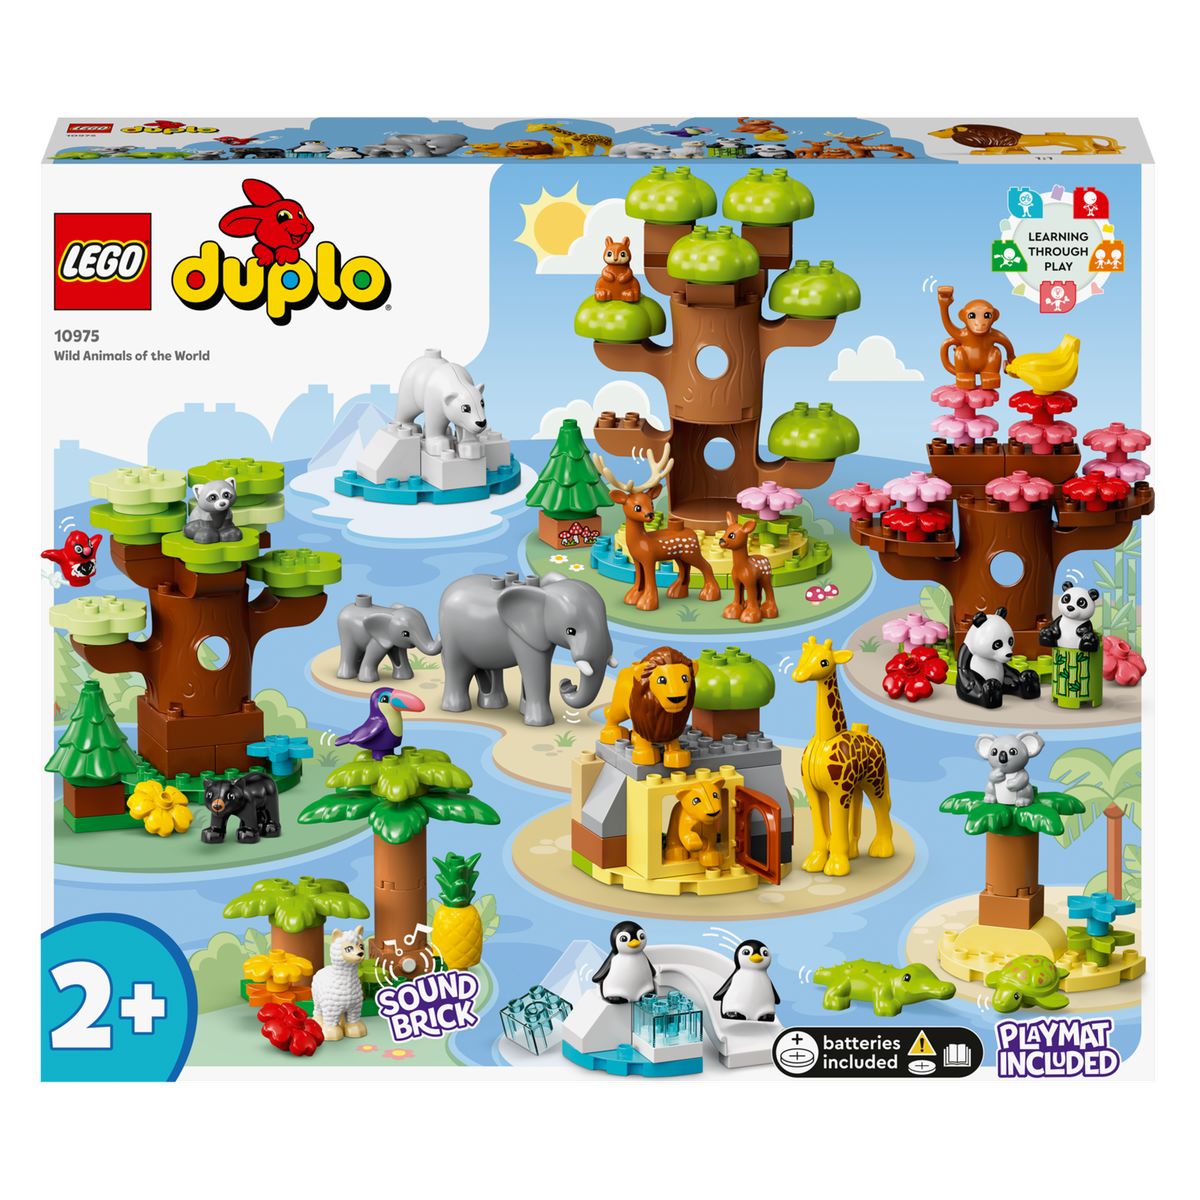 3€57 sur Puzzle en bois 4 pièces pour enfant, animaux - Multicolore - Puzzle  - Achat & prix